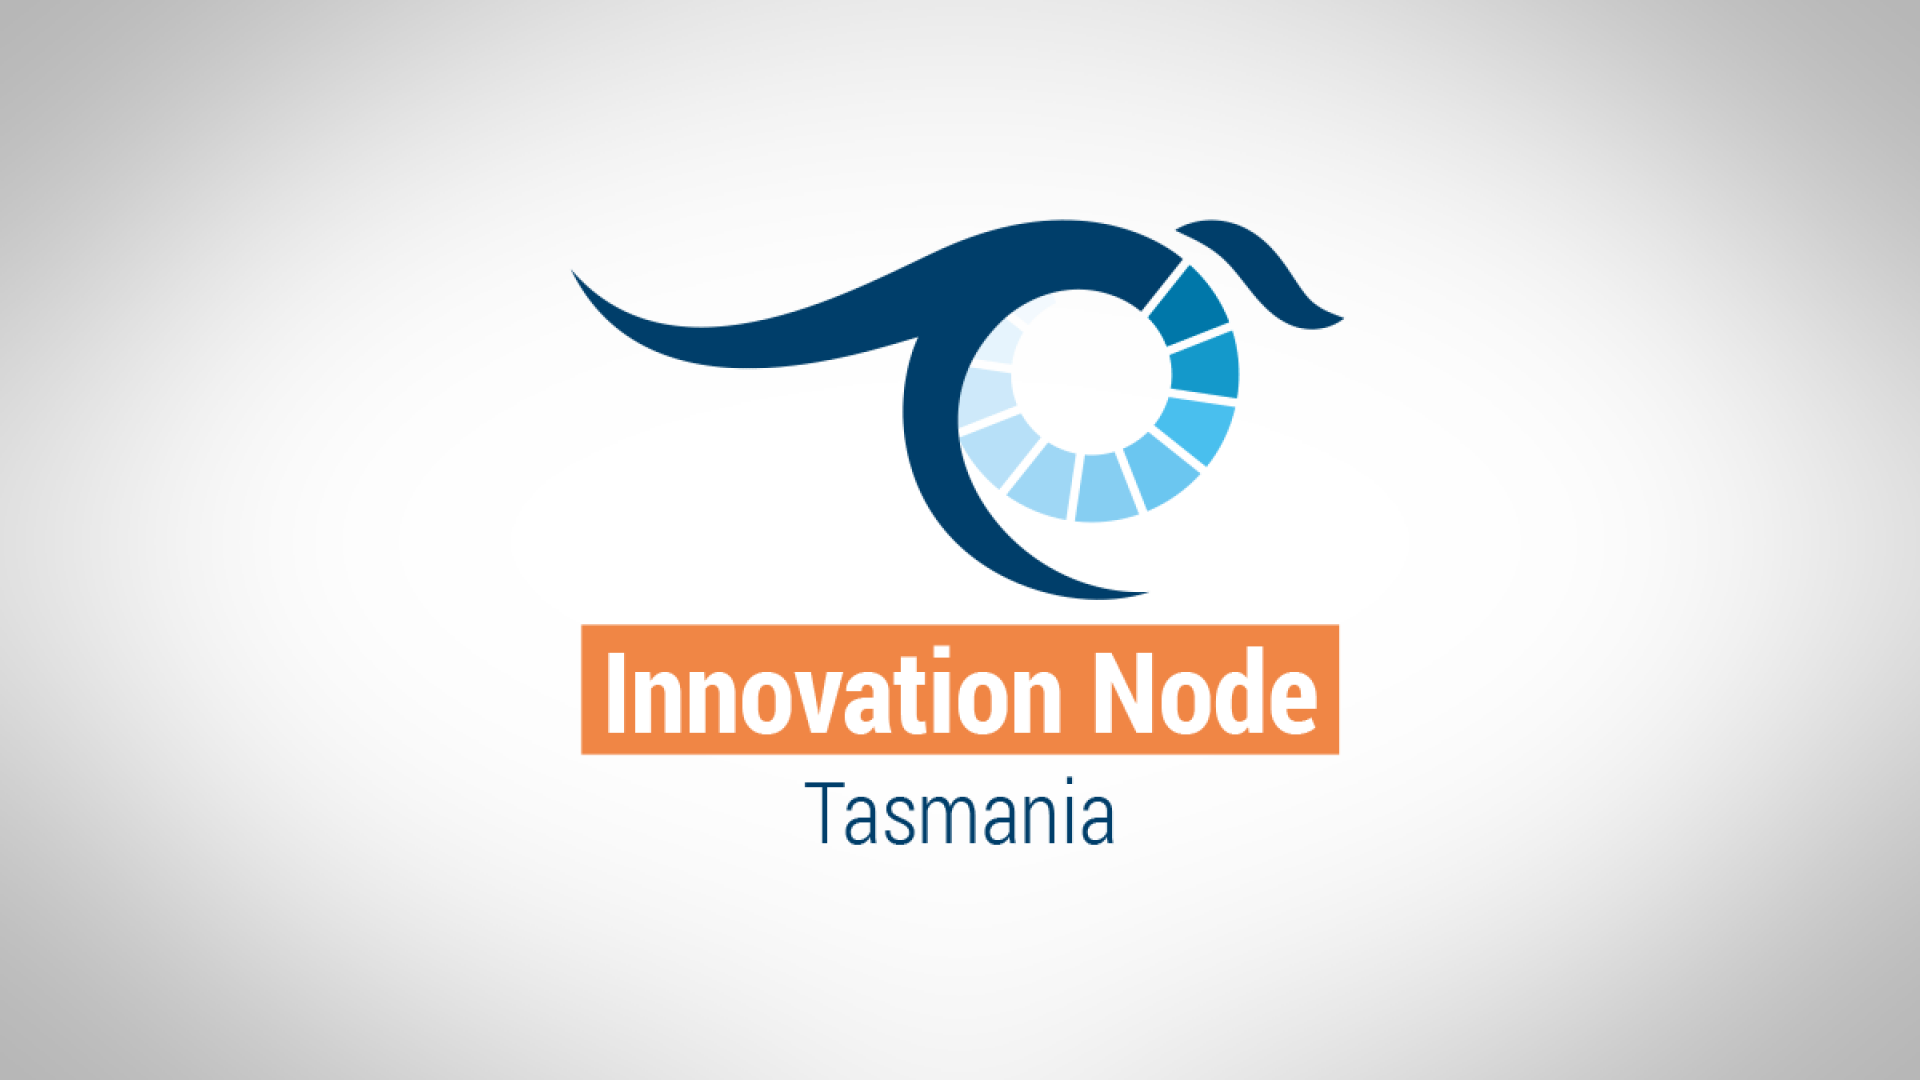 Innovation node Tasmania